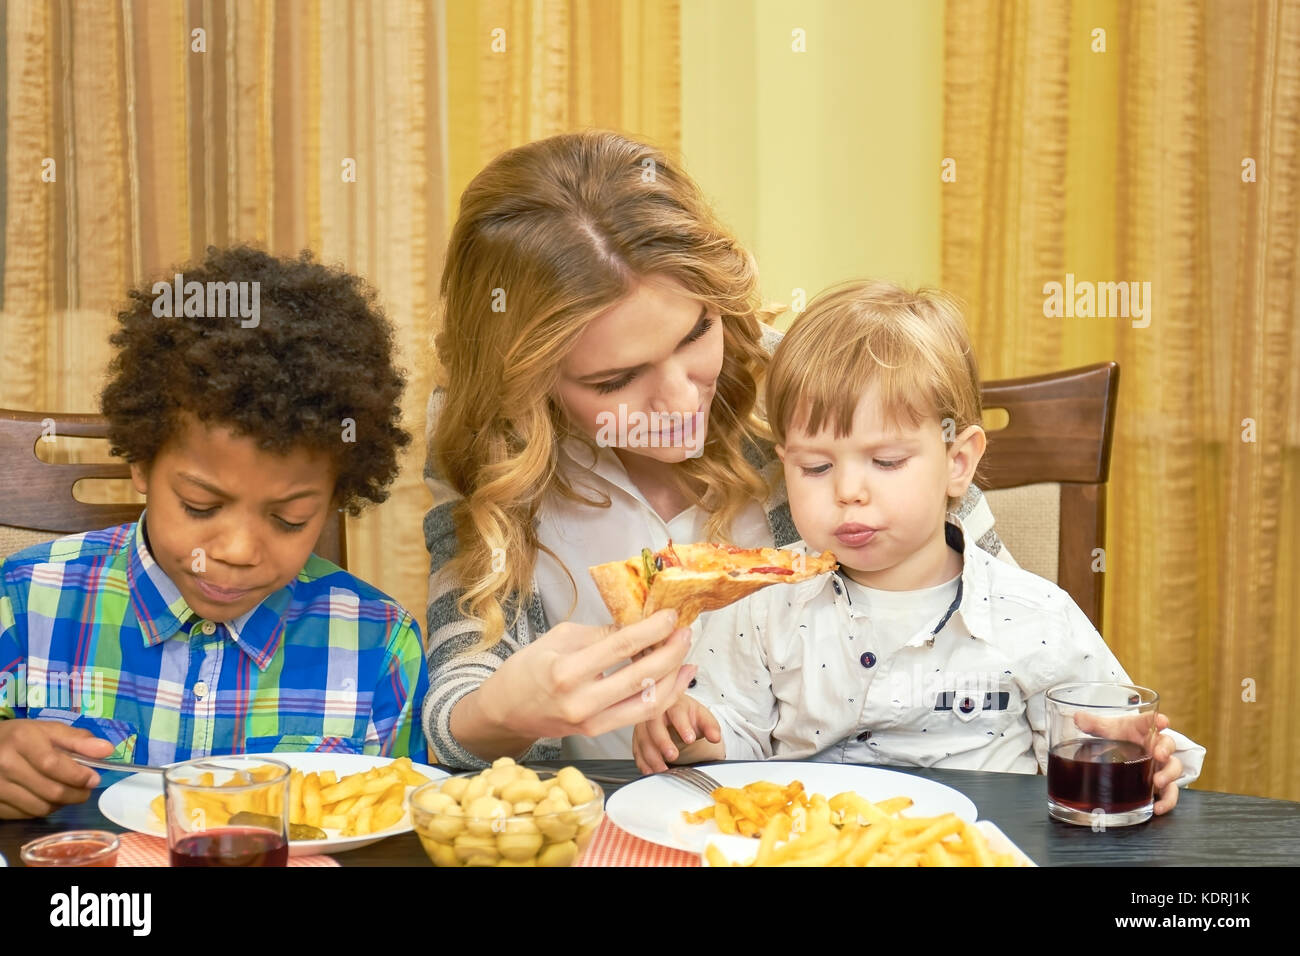 Woman feeding pizza to child. Stock Photo